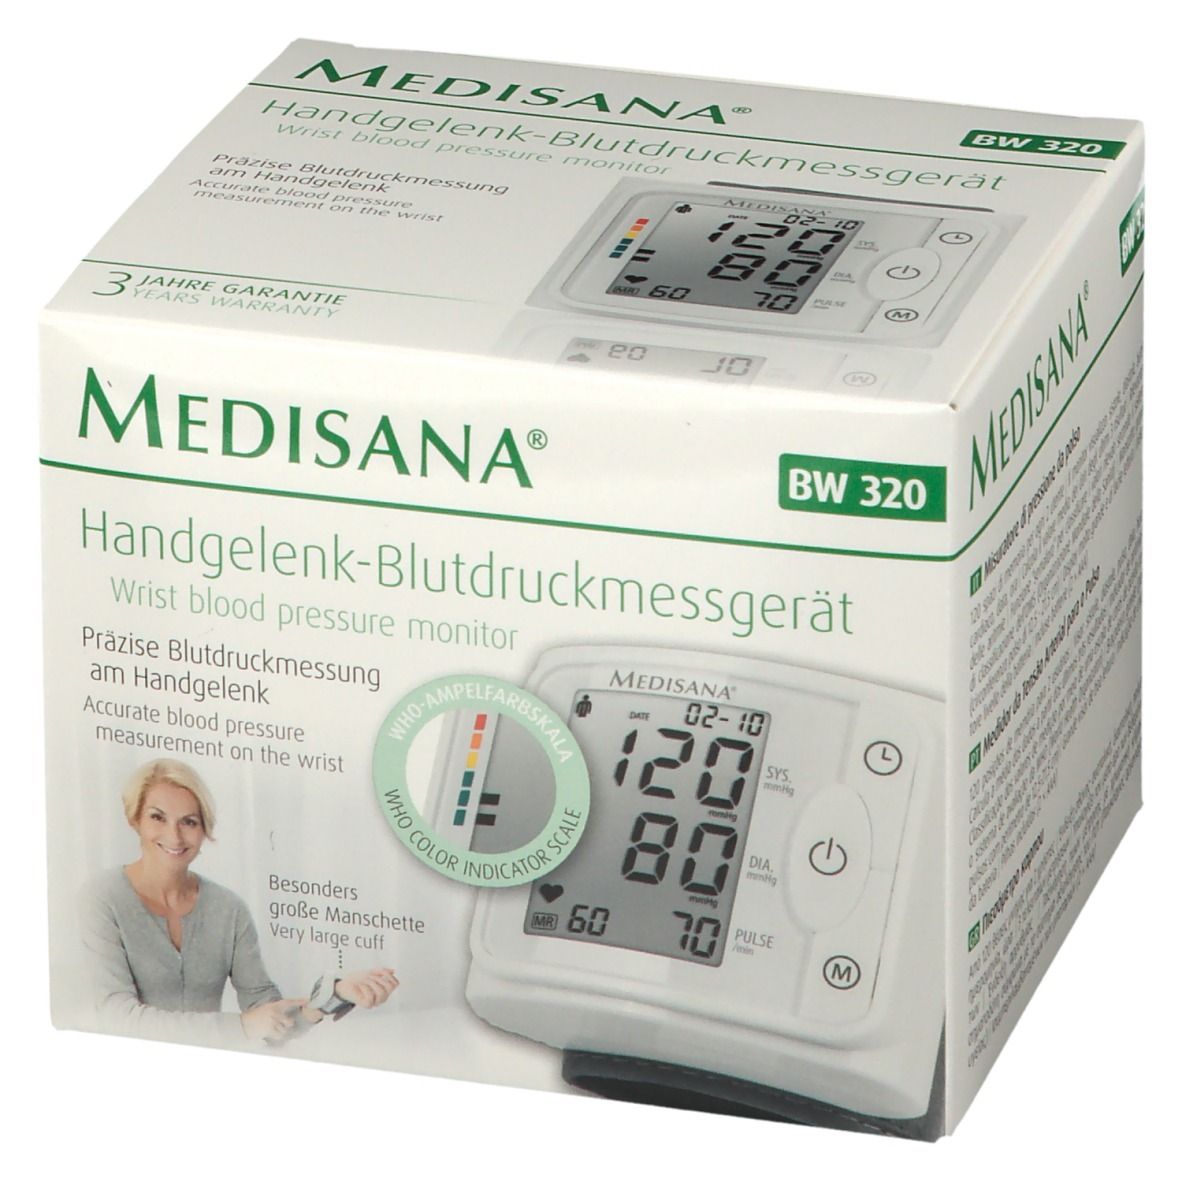 Handgelenk-Blutdruckmessgerät St 1 Redcare - BW Apotheke 320 Medisana